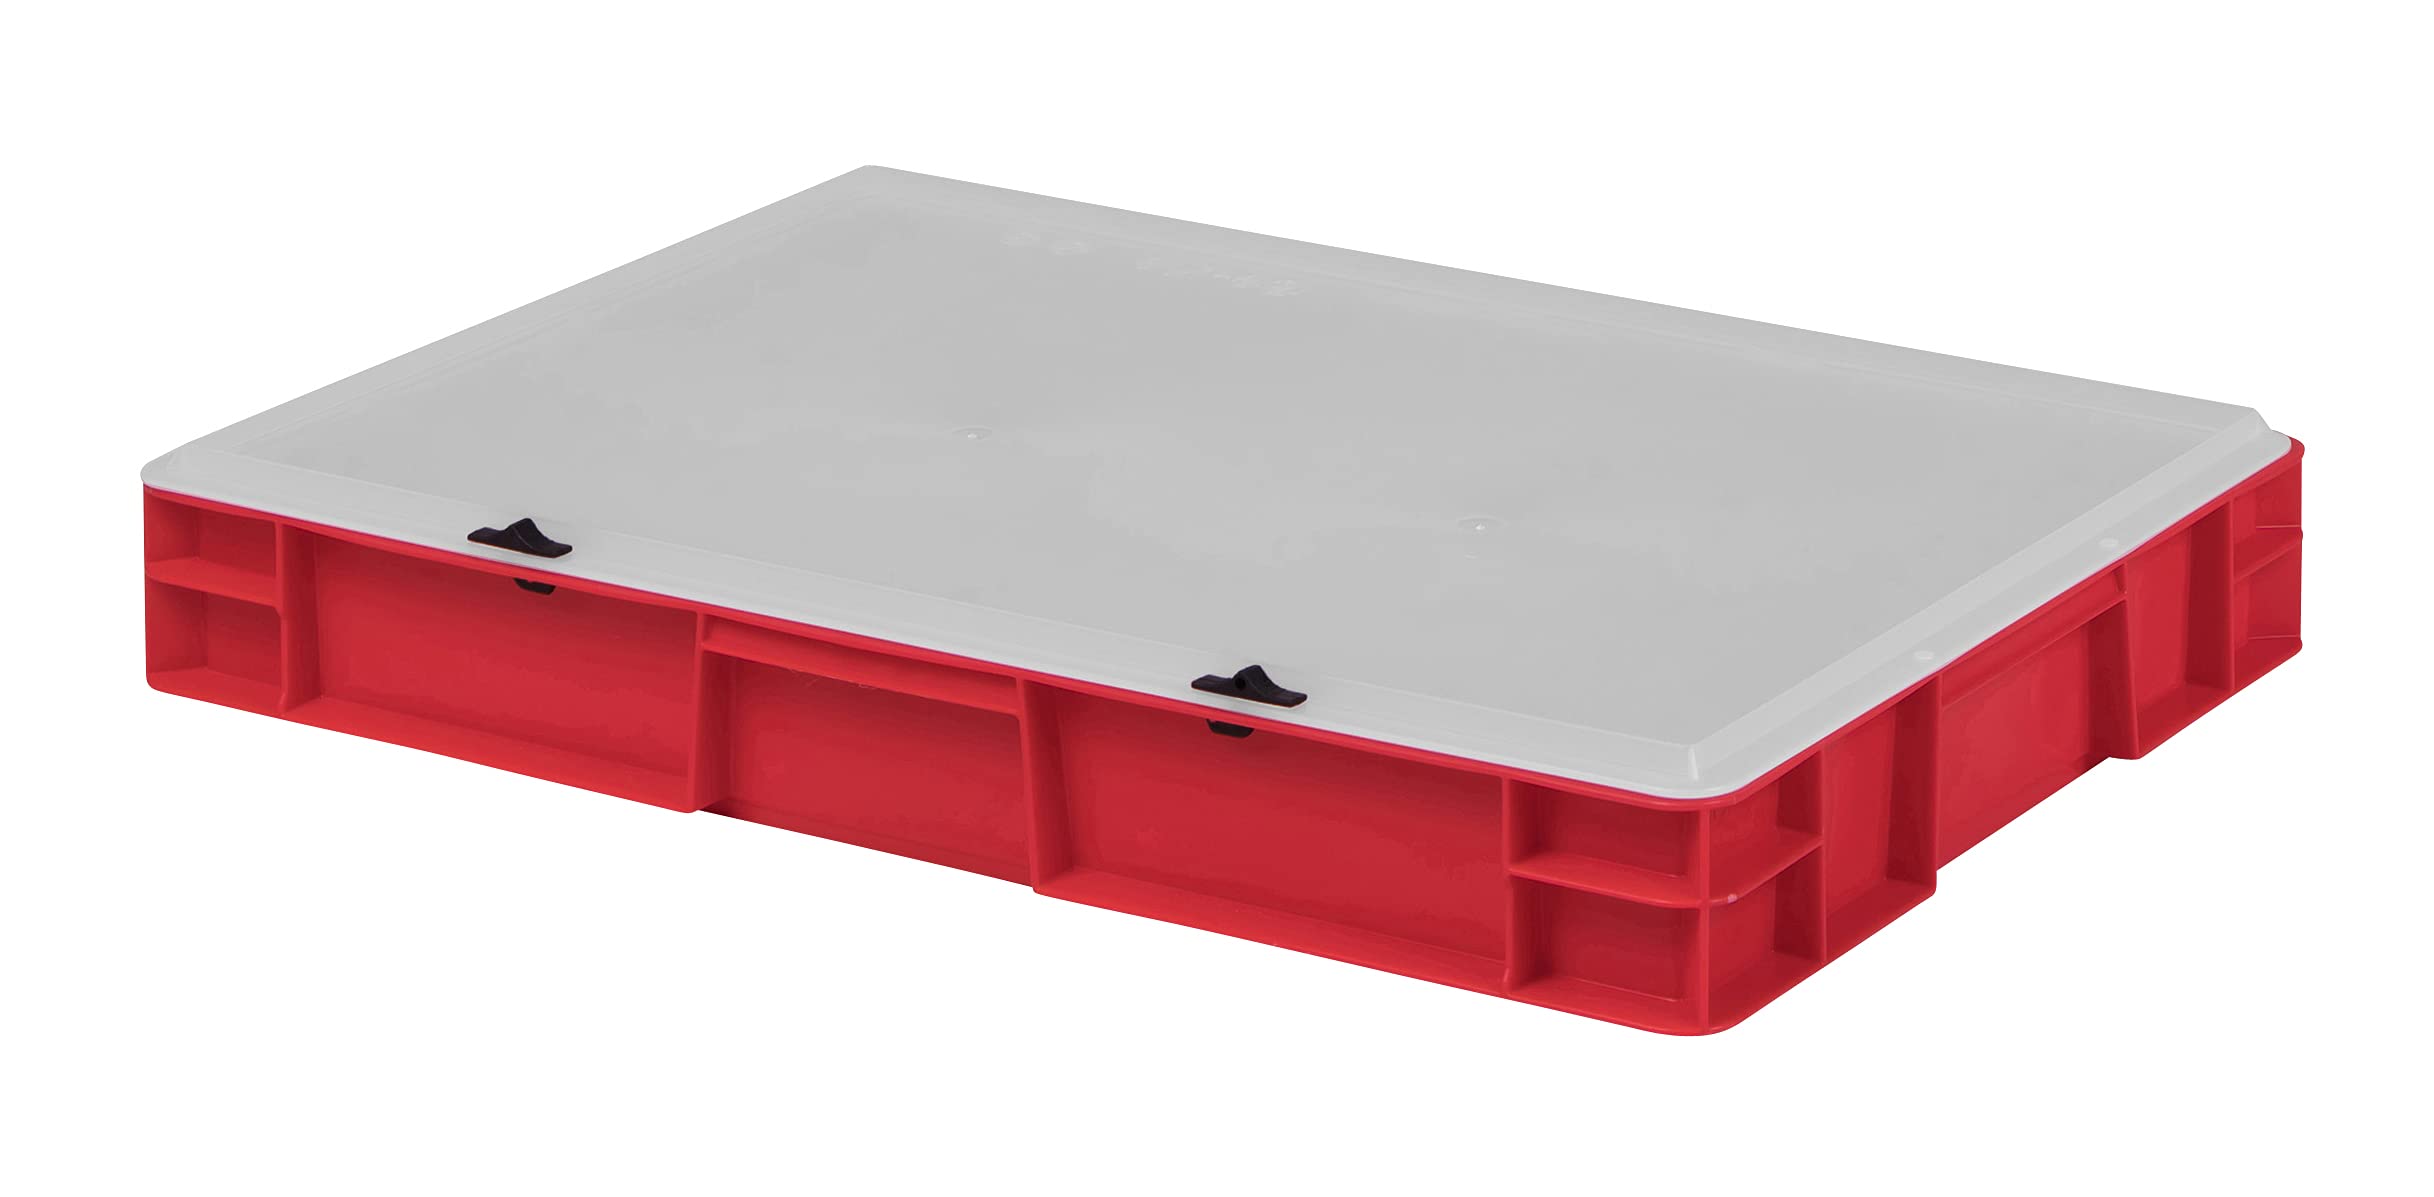 1a-TopStore Design Eurobox Stapelbox Lagerbehälter Kunststoffbox in 5 Farben und 16 Größen mit transparentem Deckel (matt) (rot, 60x40x8 cm)